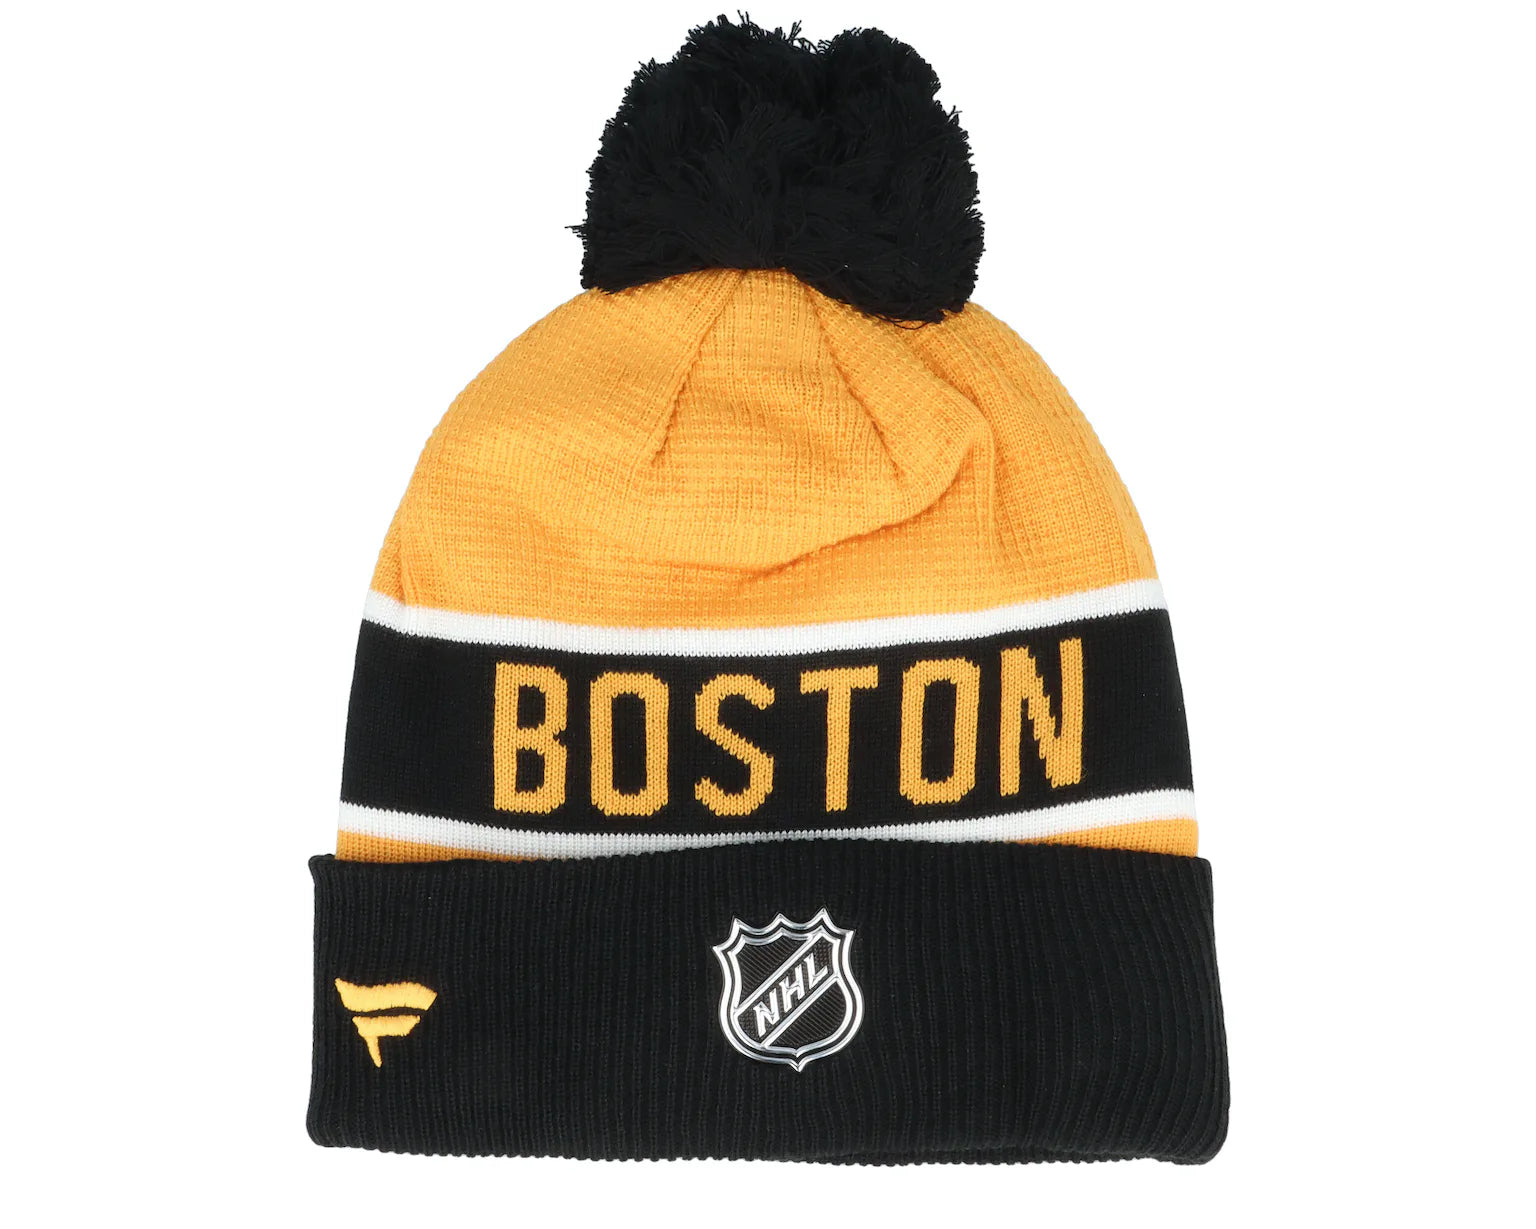 Boston Bruins NHL Reverse Retro 2.0 Cuff Knit Toque